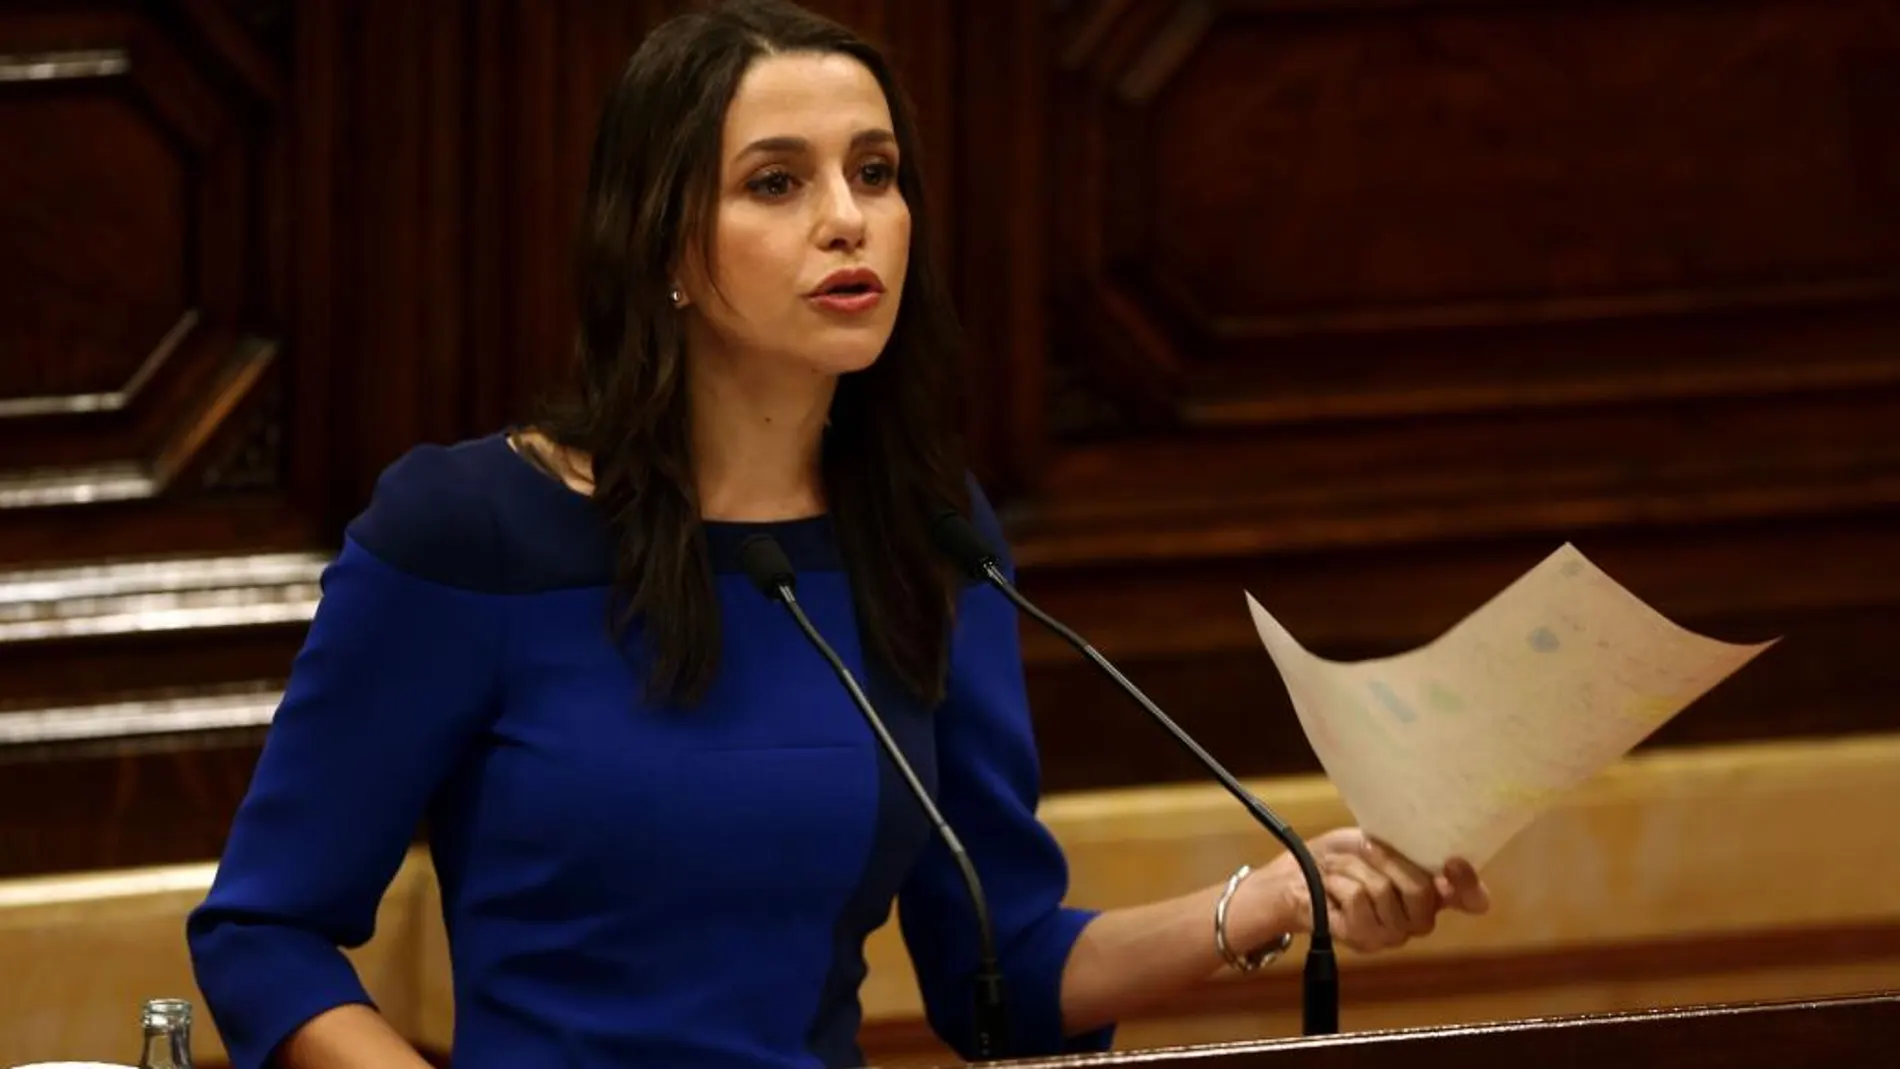 La presidenta del grupo parlamentario de Ciutadans, Inés Arrimadas, durante una intervención en el pleno del Parlament de Cataluña